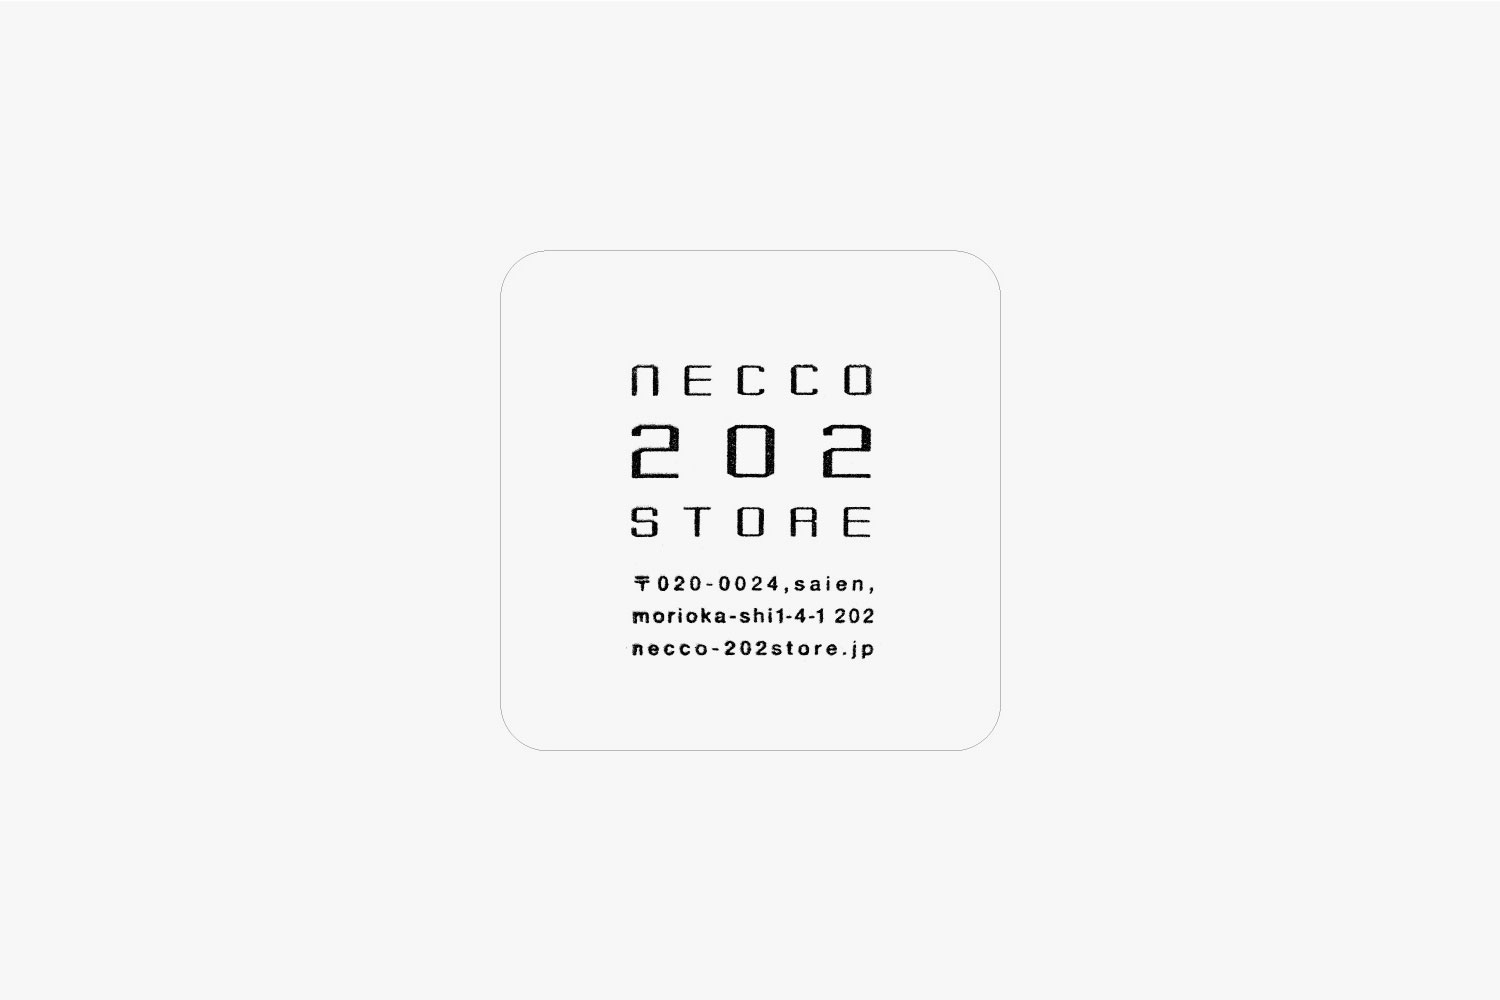 necco202store Shopcard